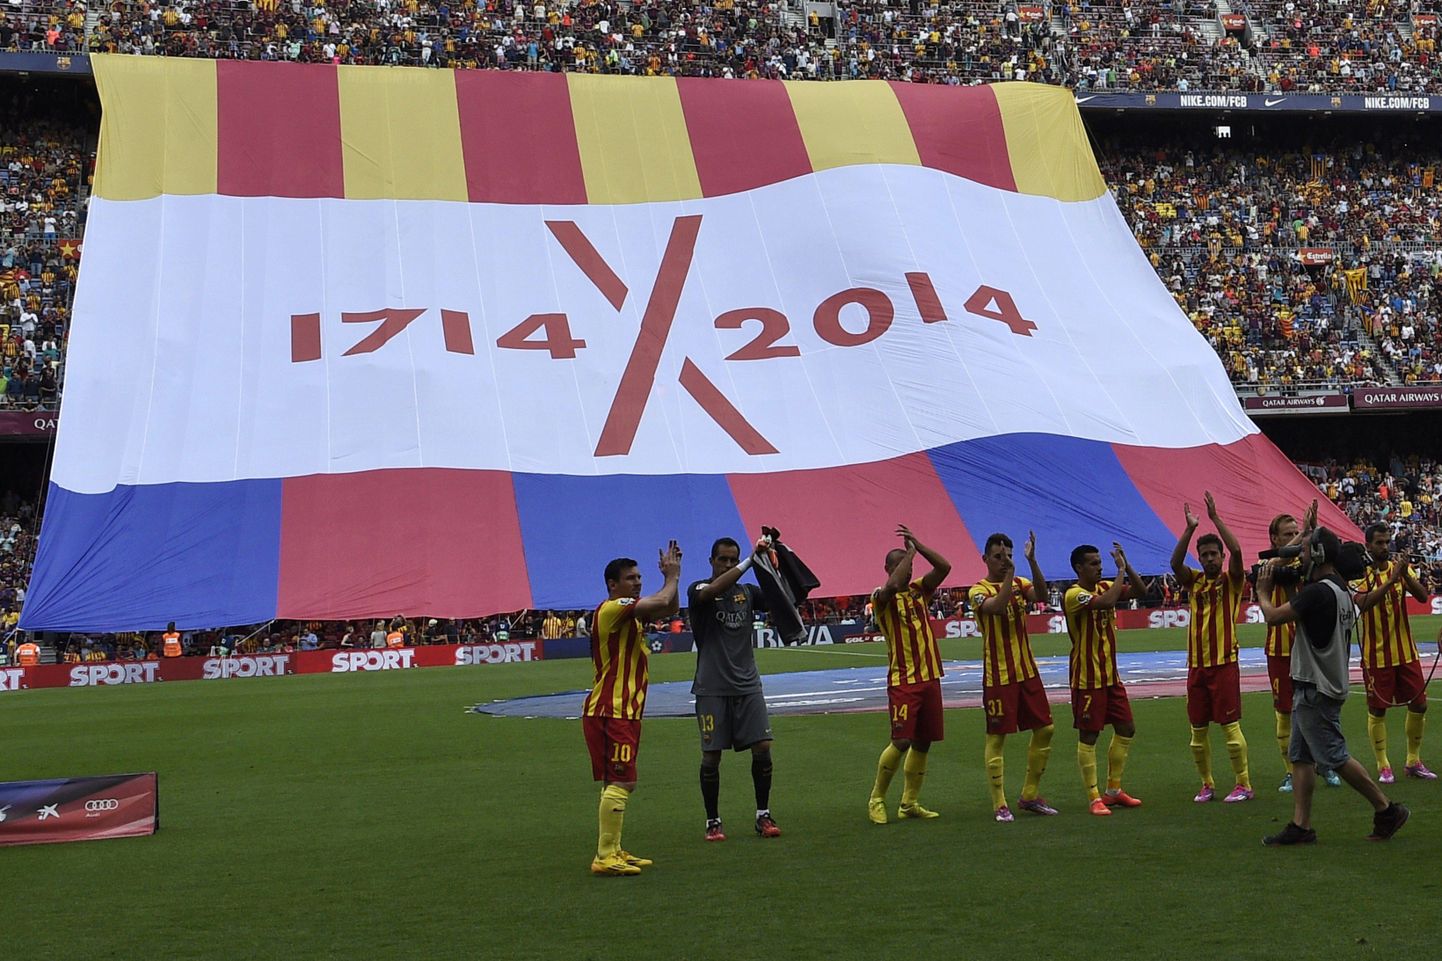 Barcelona jalgpalliklubi mängijad aplodeerivad eelmisel sügisel toimunud sümboolse referendumi eel Kataloonia iseseisvust nõudvatele fännidele.